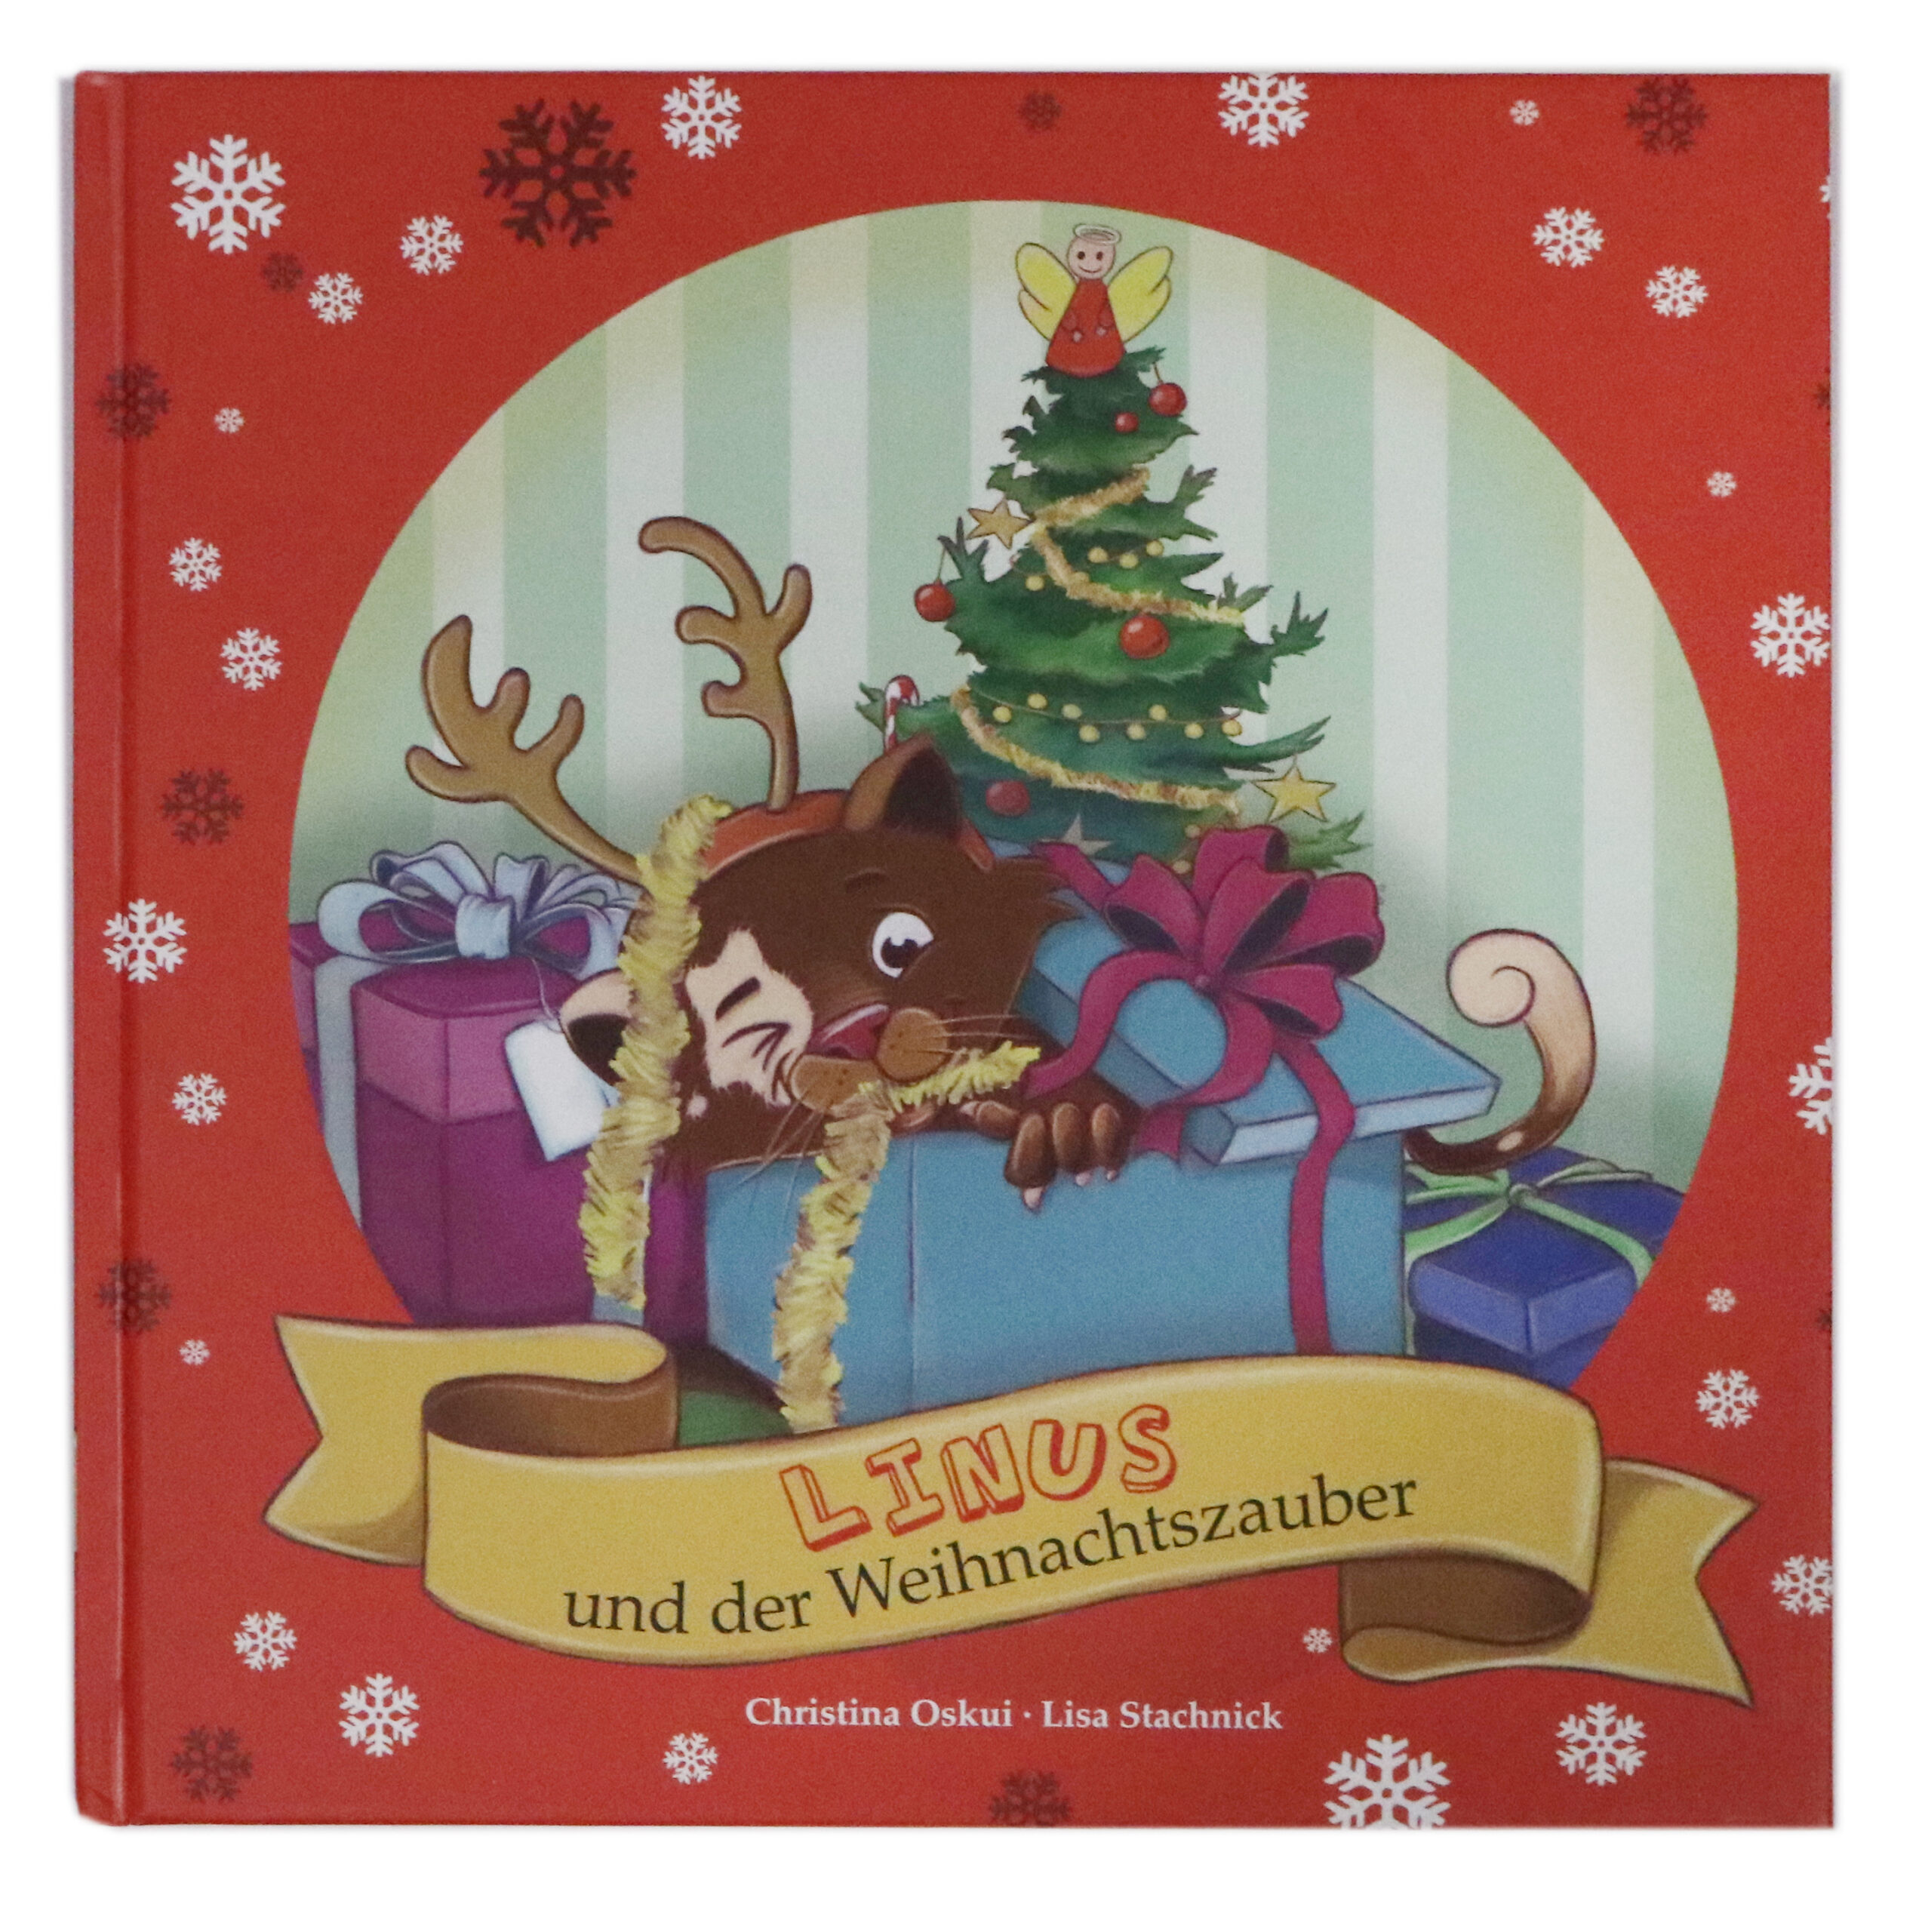 Buchcover "Linus und der Weihnachtszauber", Katze liegt in einem Haufen von Weihanchtsgeschenken und hat eine Schleife im Maul und ein Rentiergeweih auf dem Kopf. Im Hintergrund ist ein geschmückter Tannenbaum zu sehen.